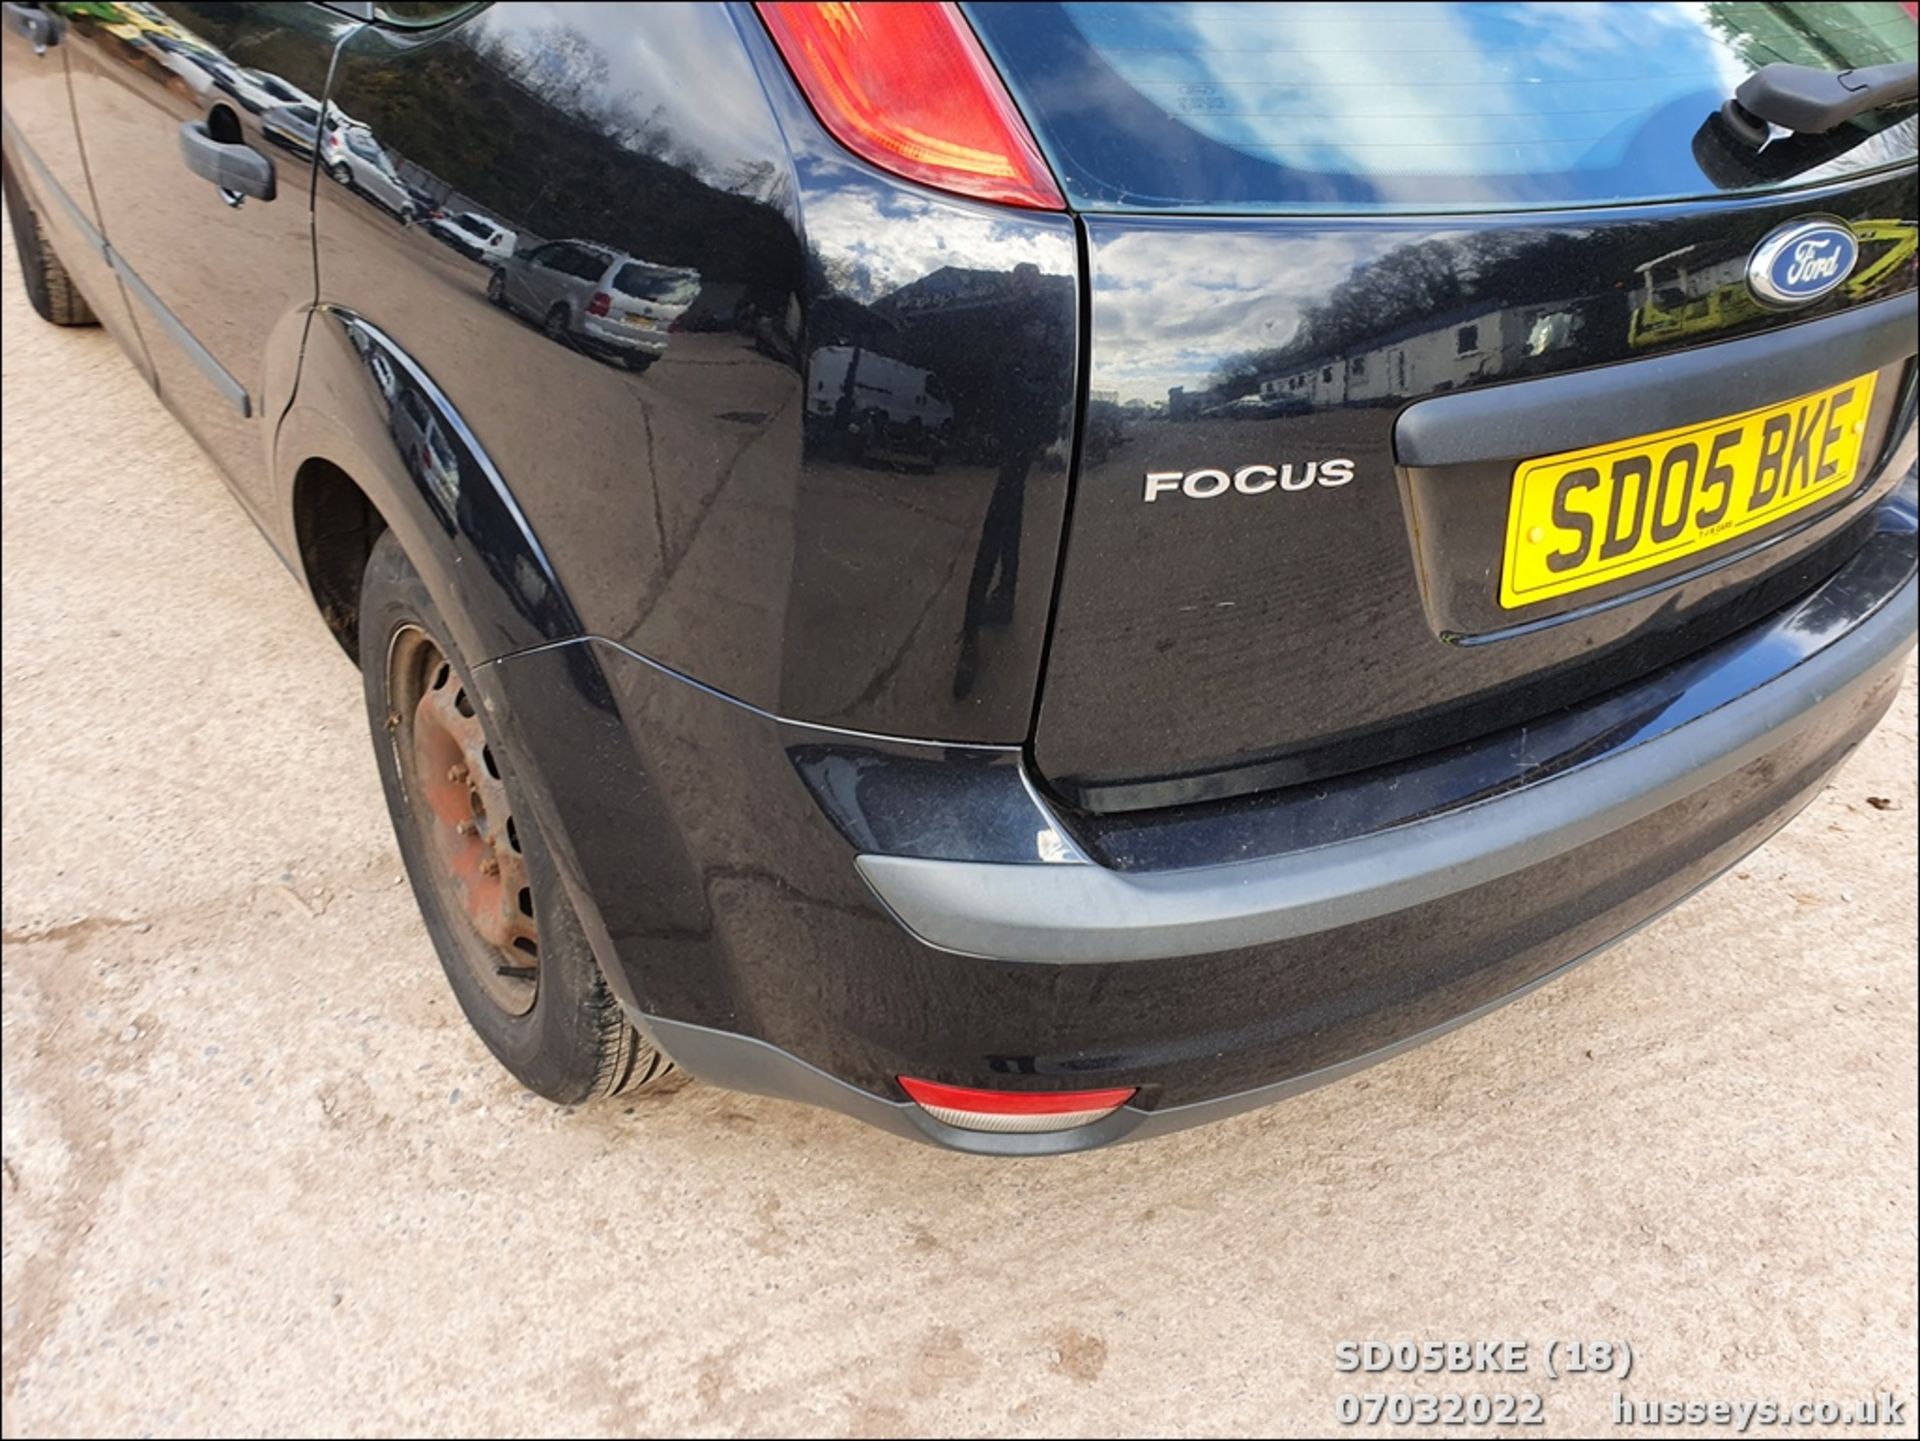 05/05 FORD FOCUS STUDIO - 1388cc 5dr Hatchback (Black, 105k) - Image 18 of 31